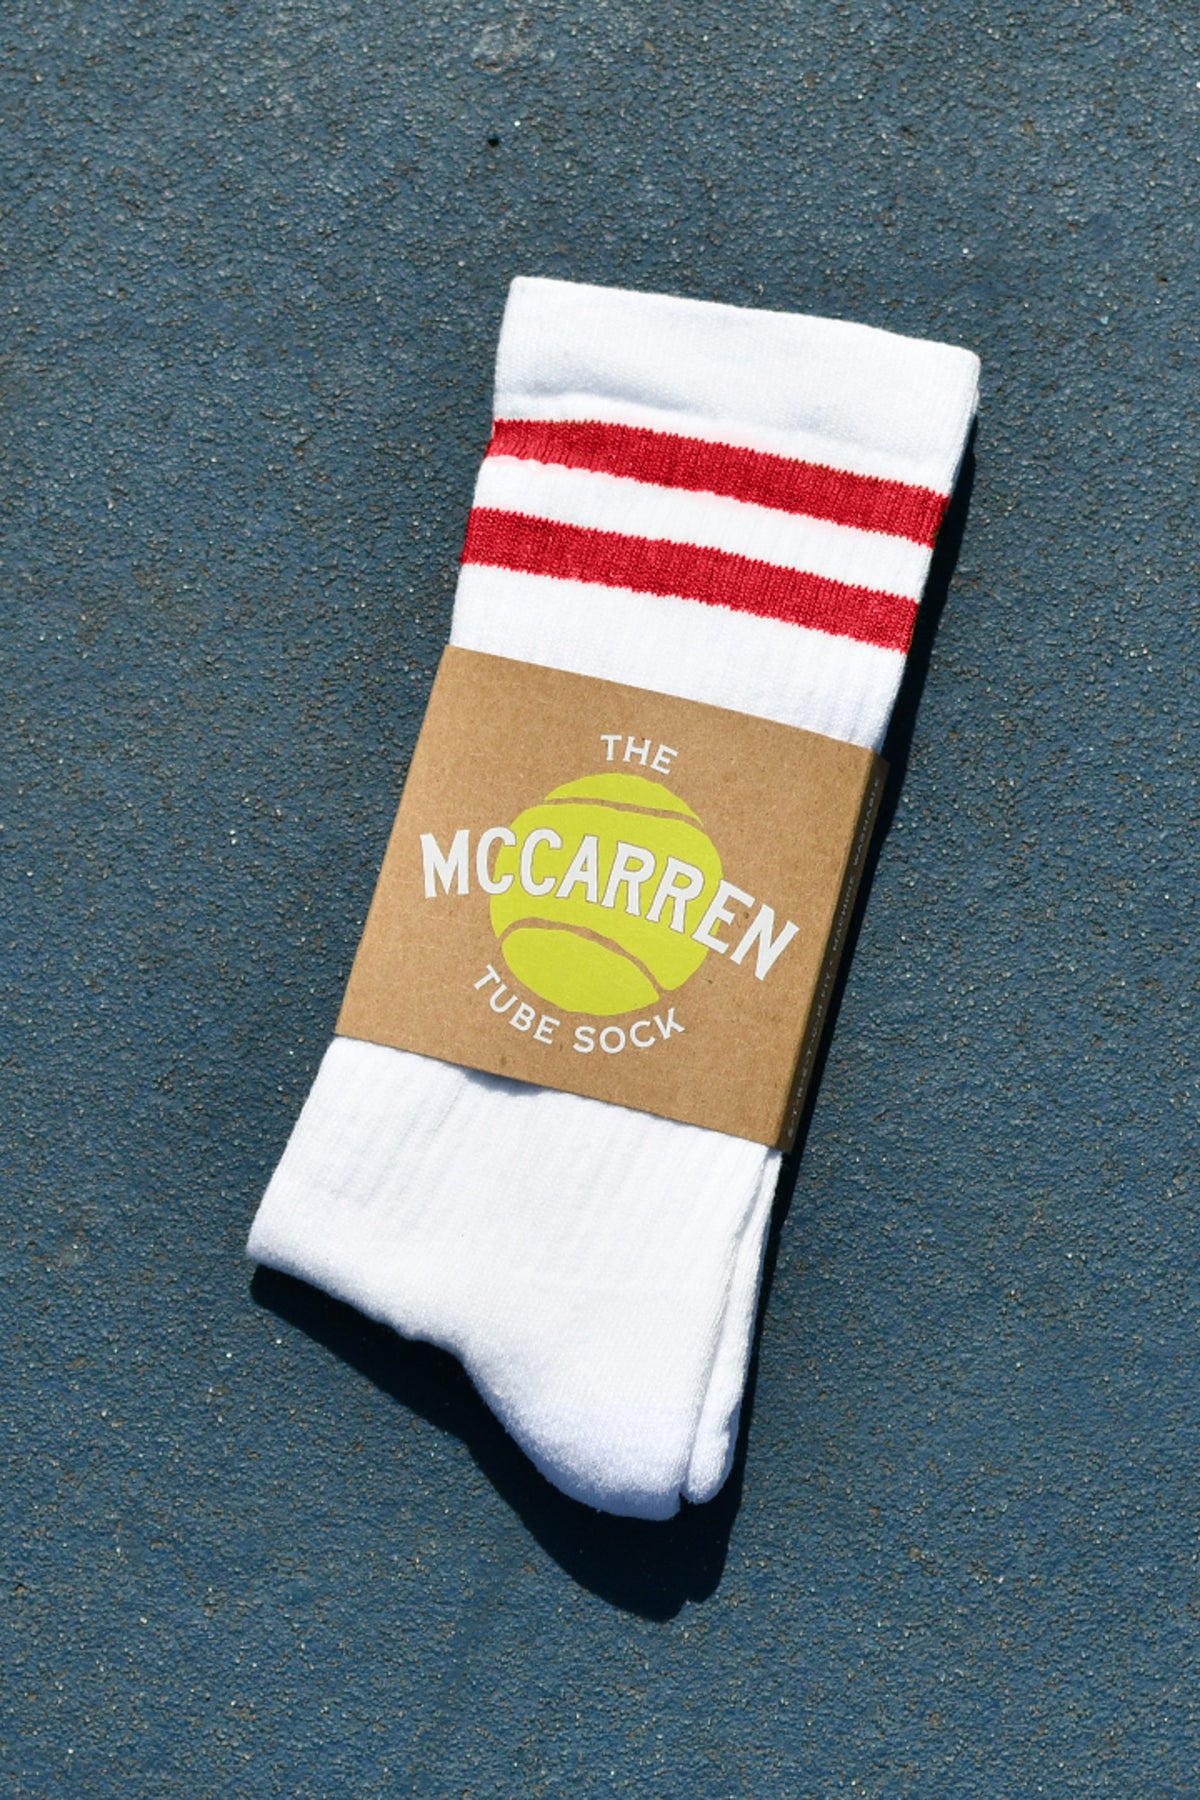 The McCarren Tube Sock